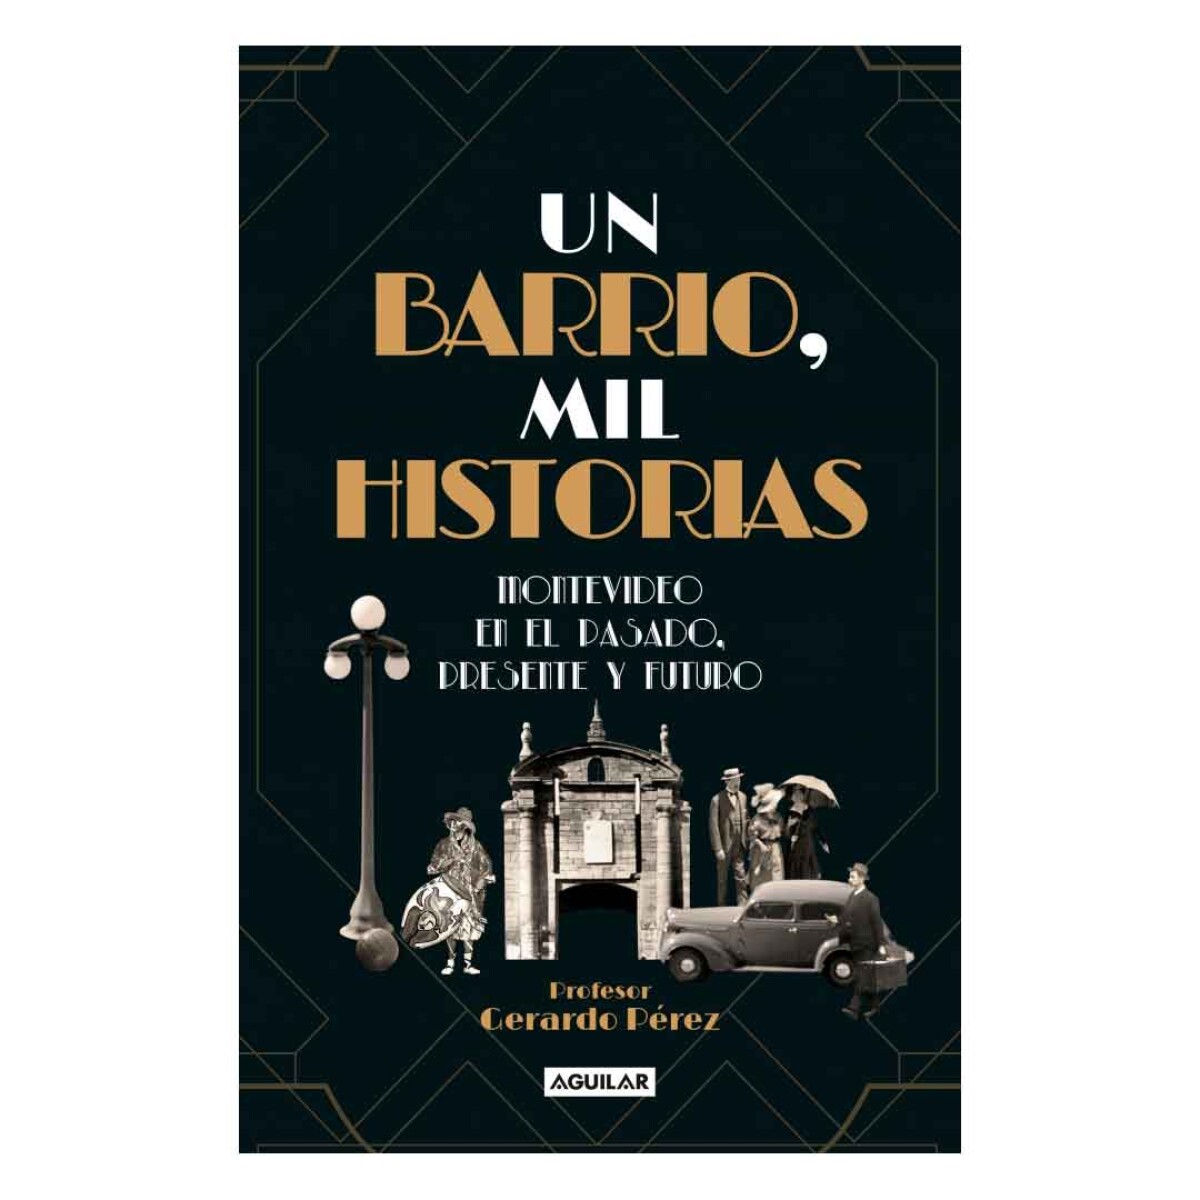 Libro Un Barrio Mil Historias by Gerardo Perez - 001 